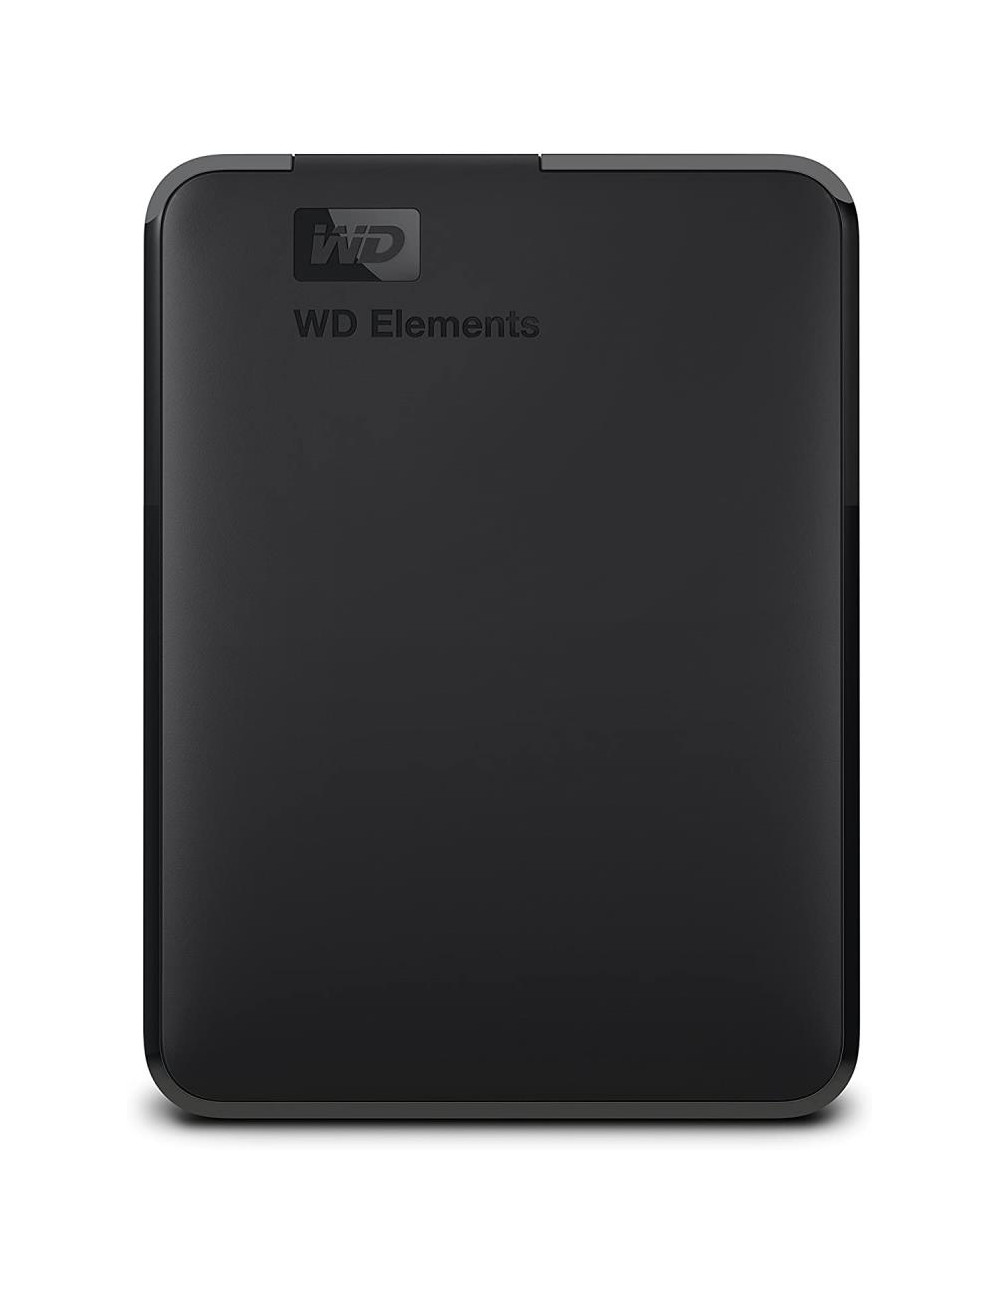 External HDD|WESTERN DIGITAL|Elements Portable|WDBU6Y0050BBK-WESN|5TB|USB 3.0|Colour Black|WDBU6Y0050BBK-WESN